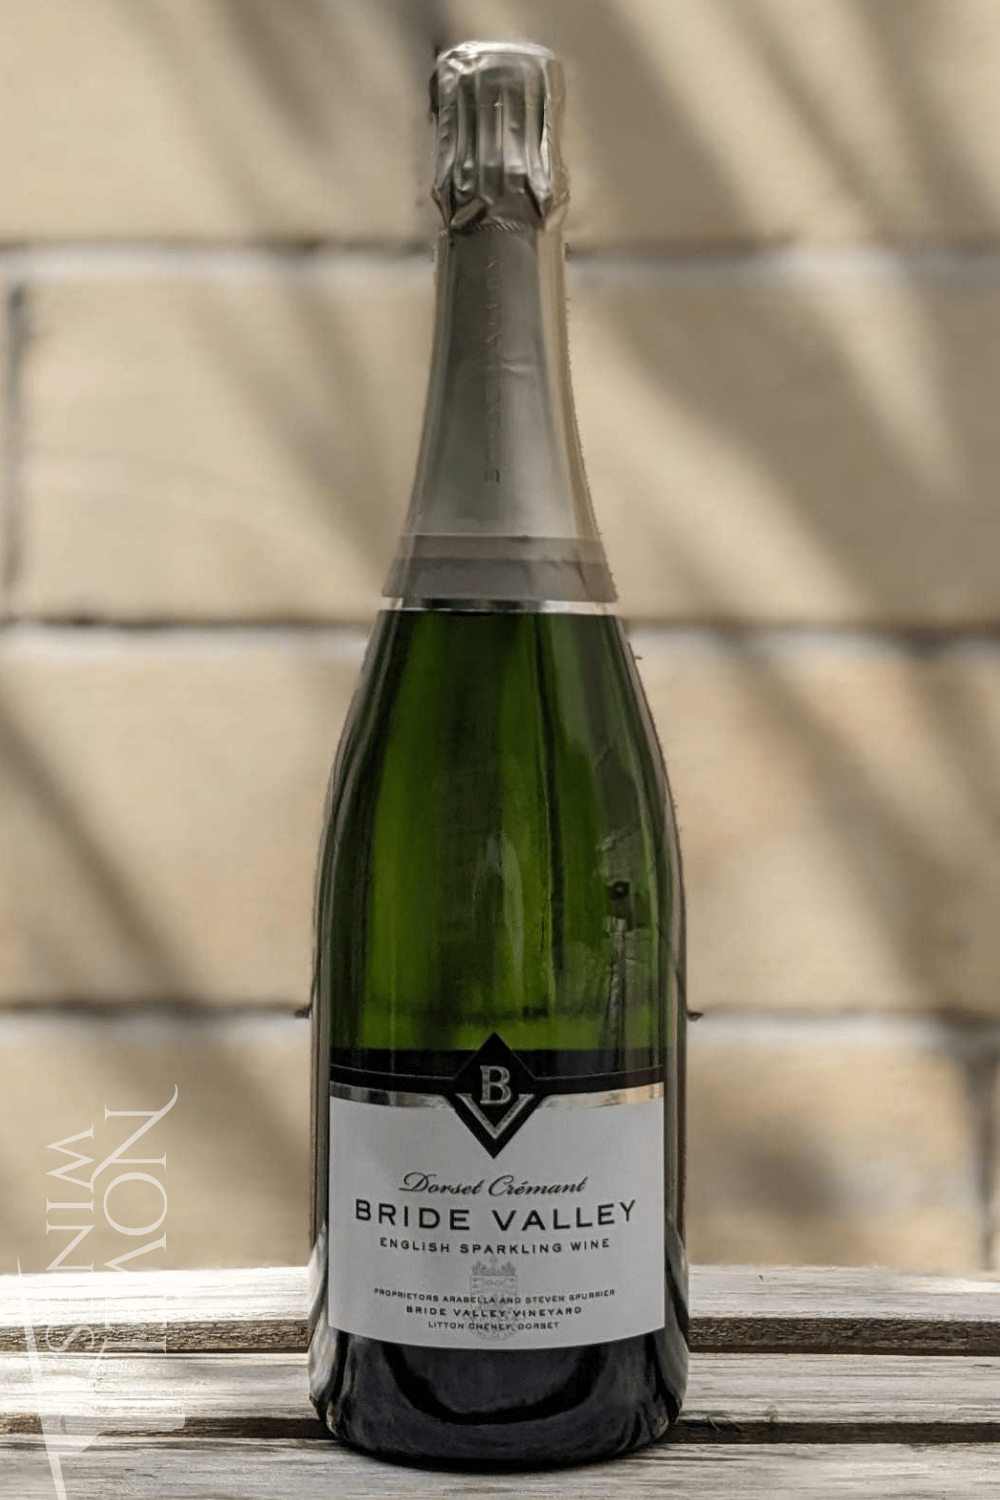 Bride Valley Vineyard Sparkling Wine Bride Valley Vineyard Dorset Crémant NV, England